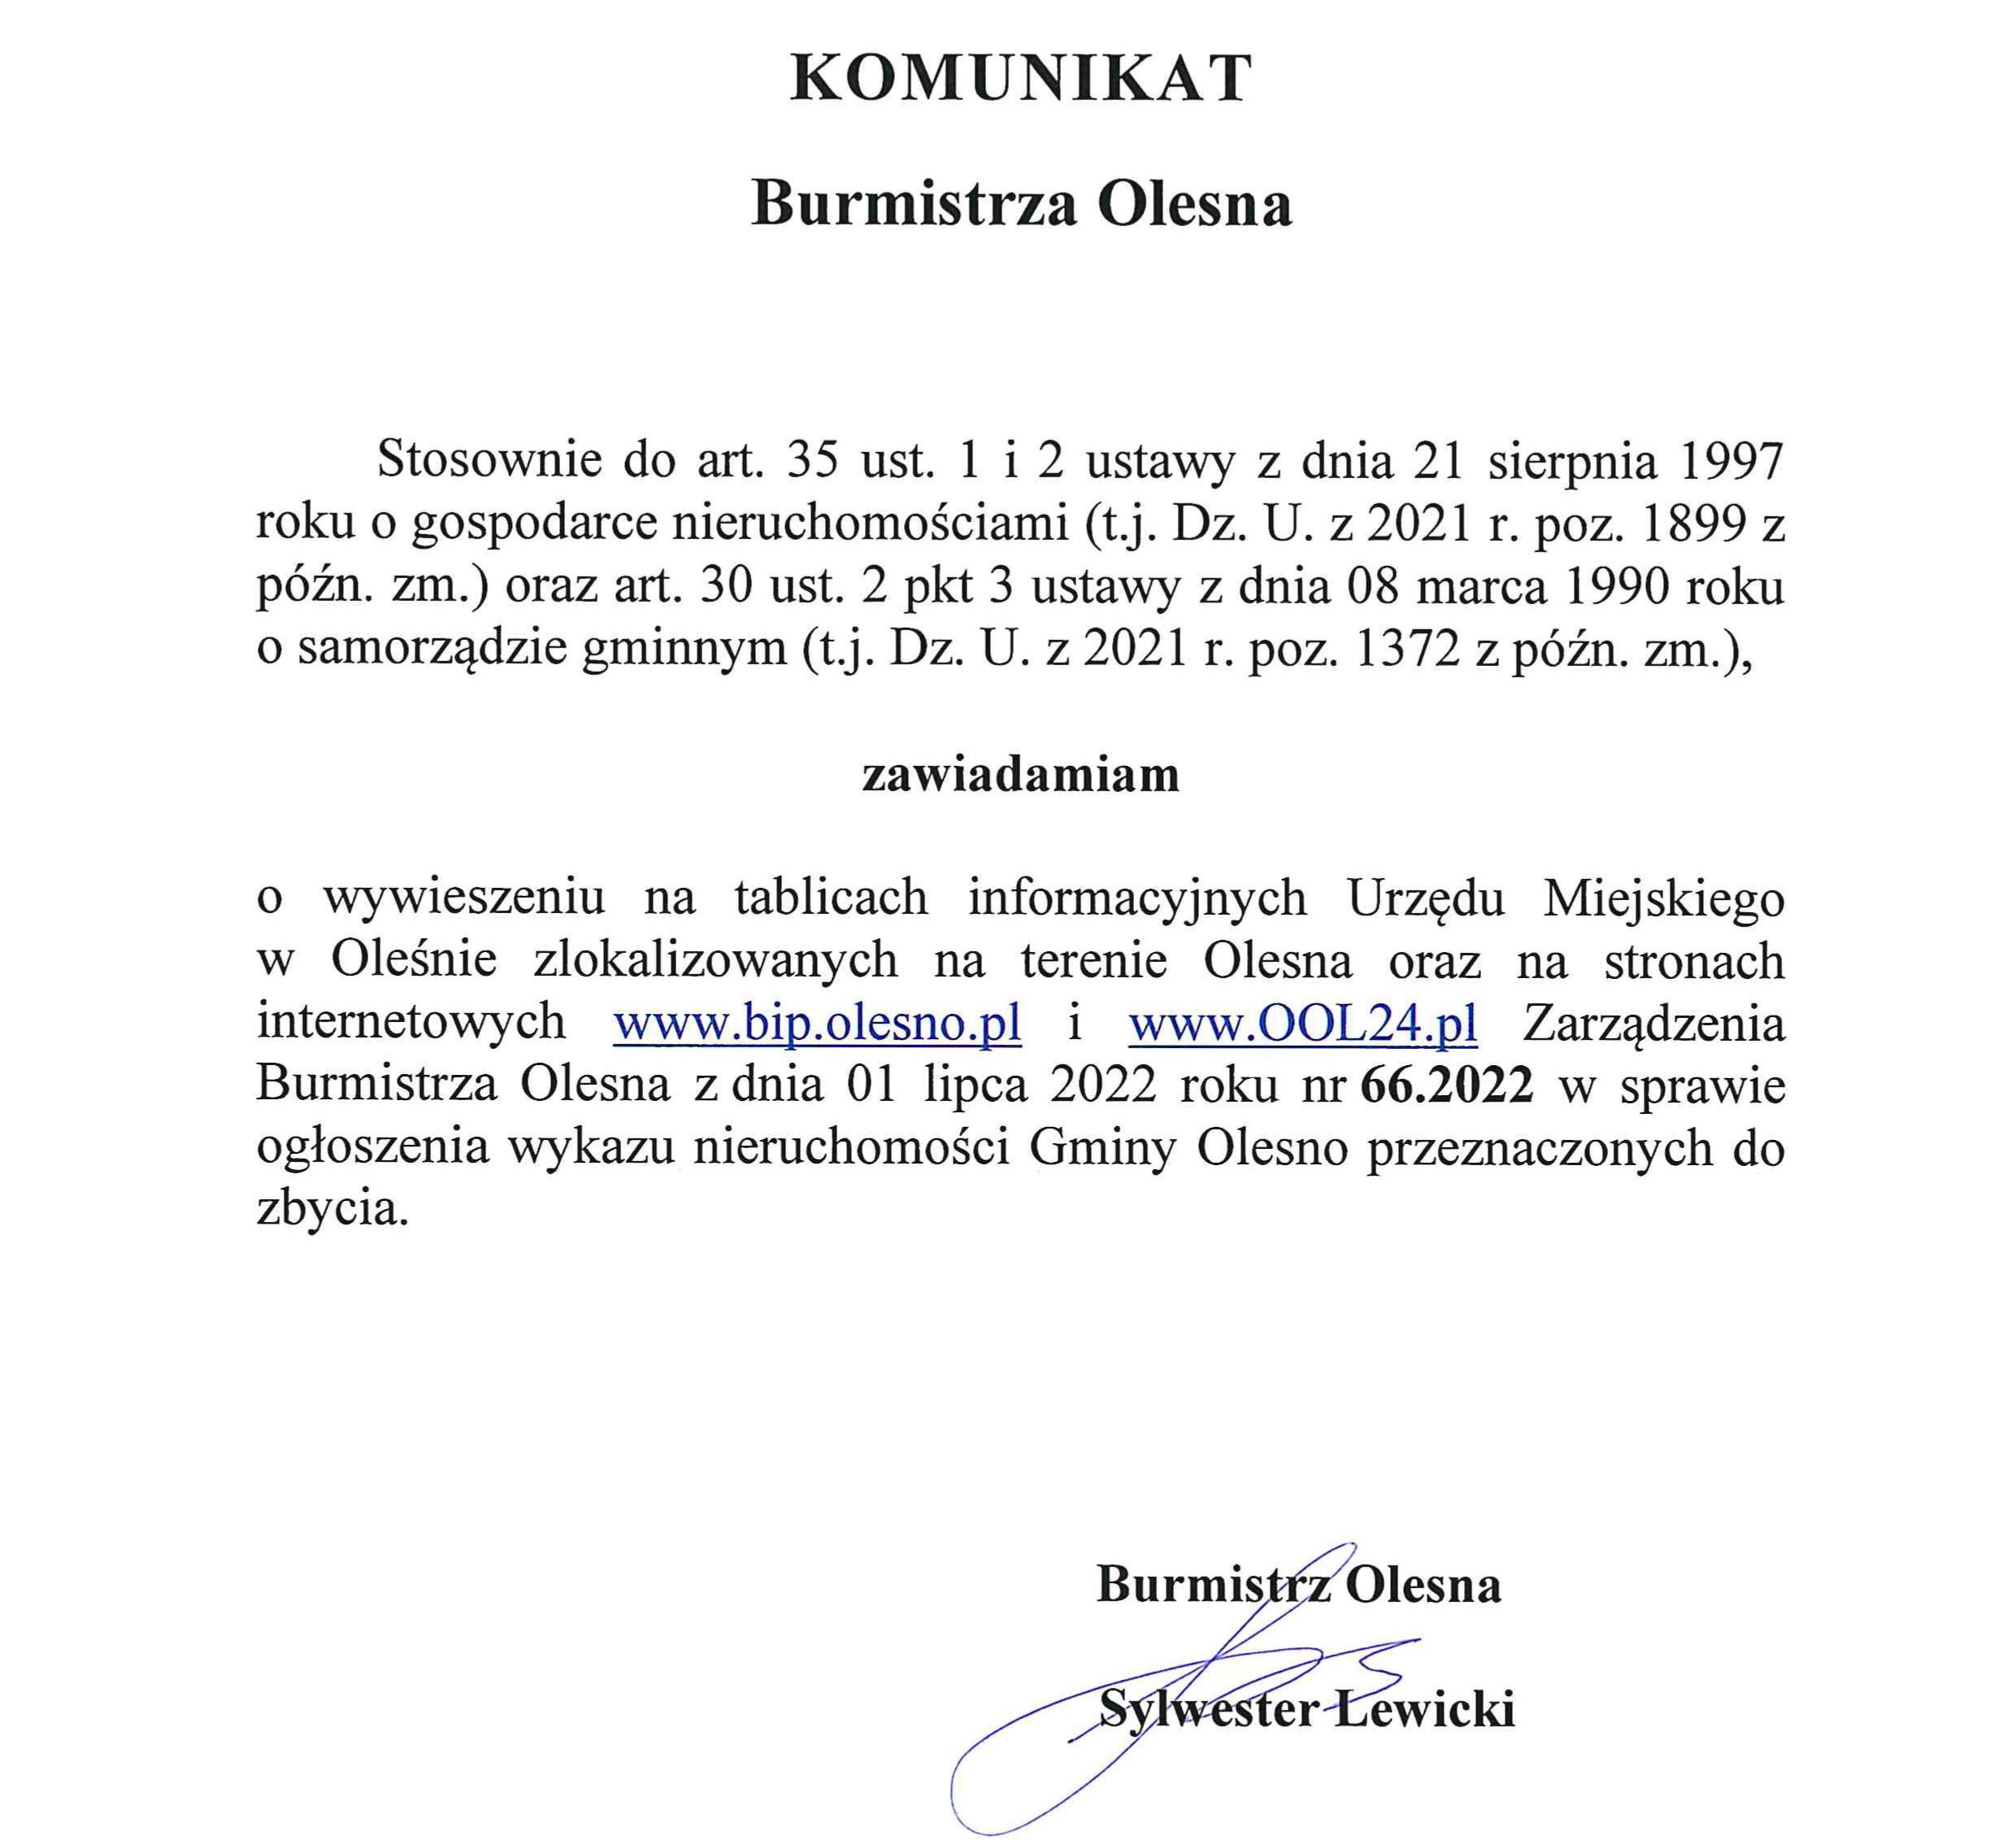 komunikat-burmistrza-olesna-zarzadzenie-nr-66-2022-z-01-07-2022-publikacja